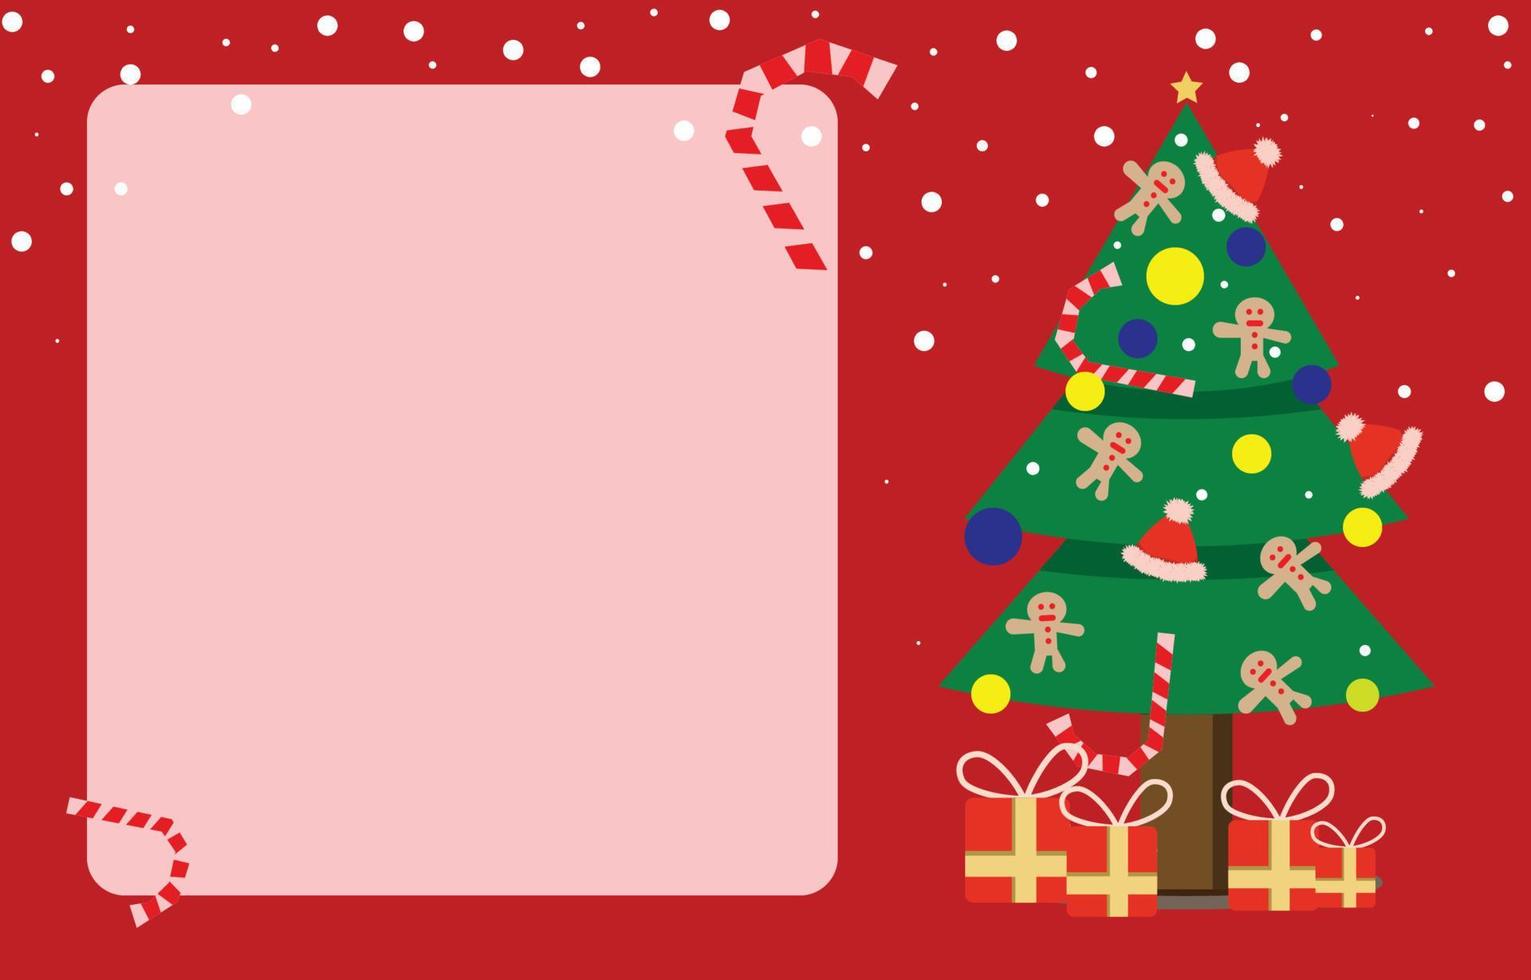 marco cuadrado en blanco y árbol de navidad decorado con regalos y dulces, concepto de tarjeta de felicitación de año nuevo y navidad, fondo vectorial. vector